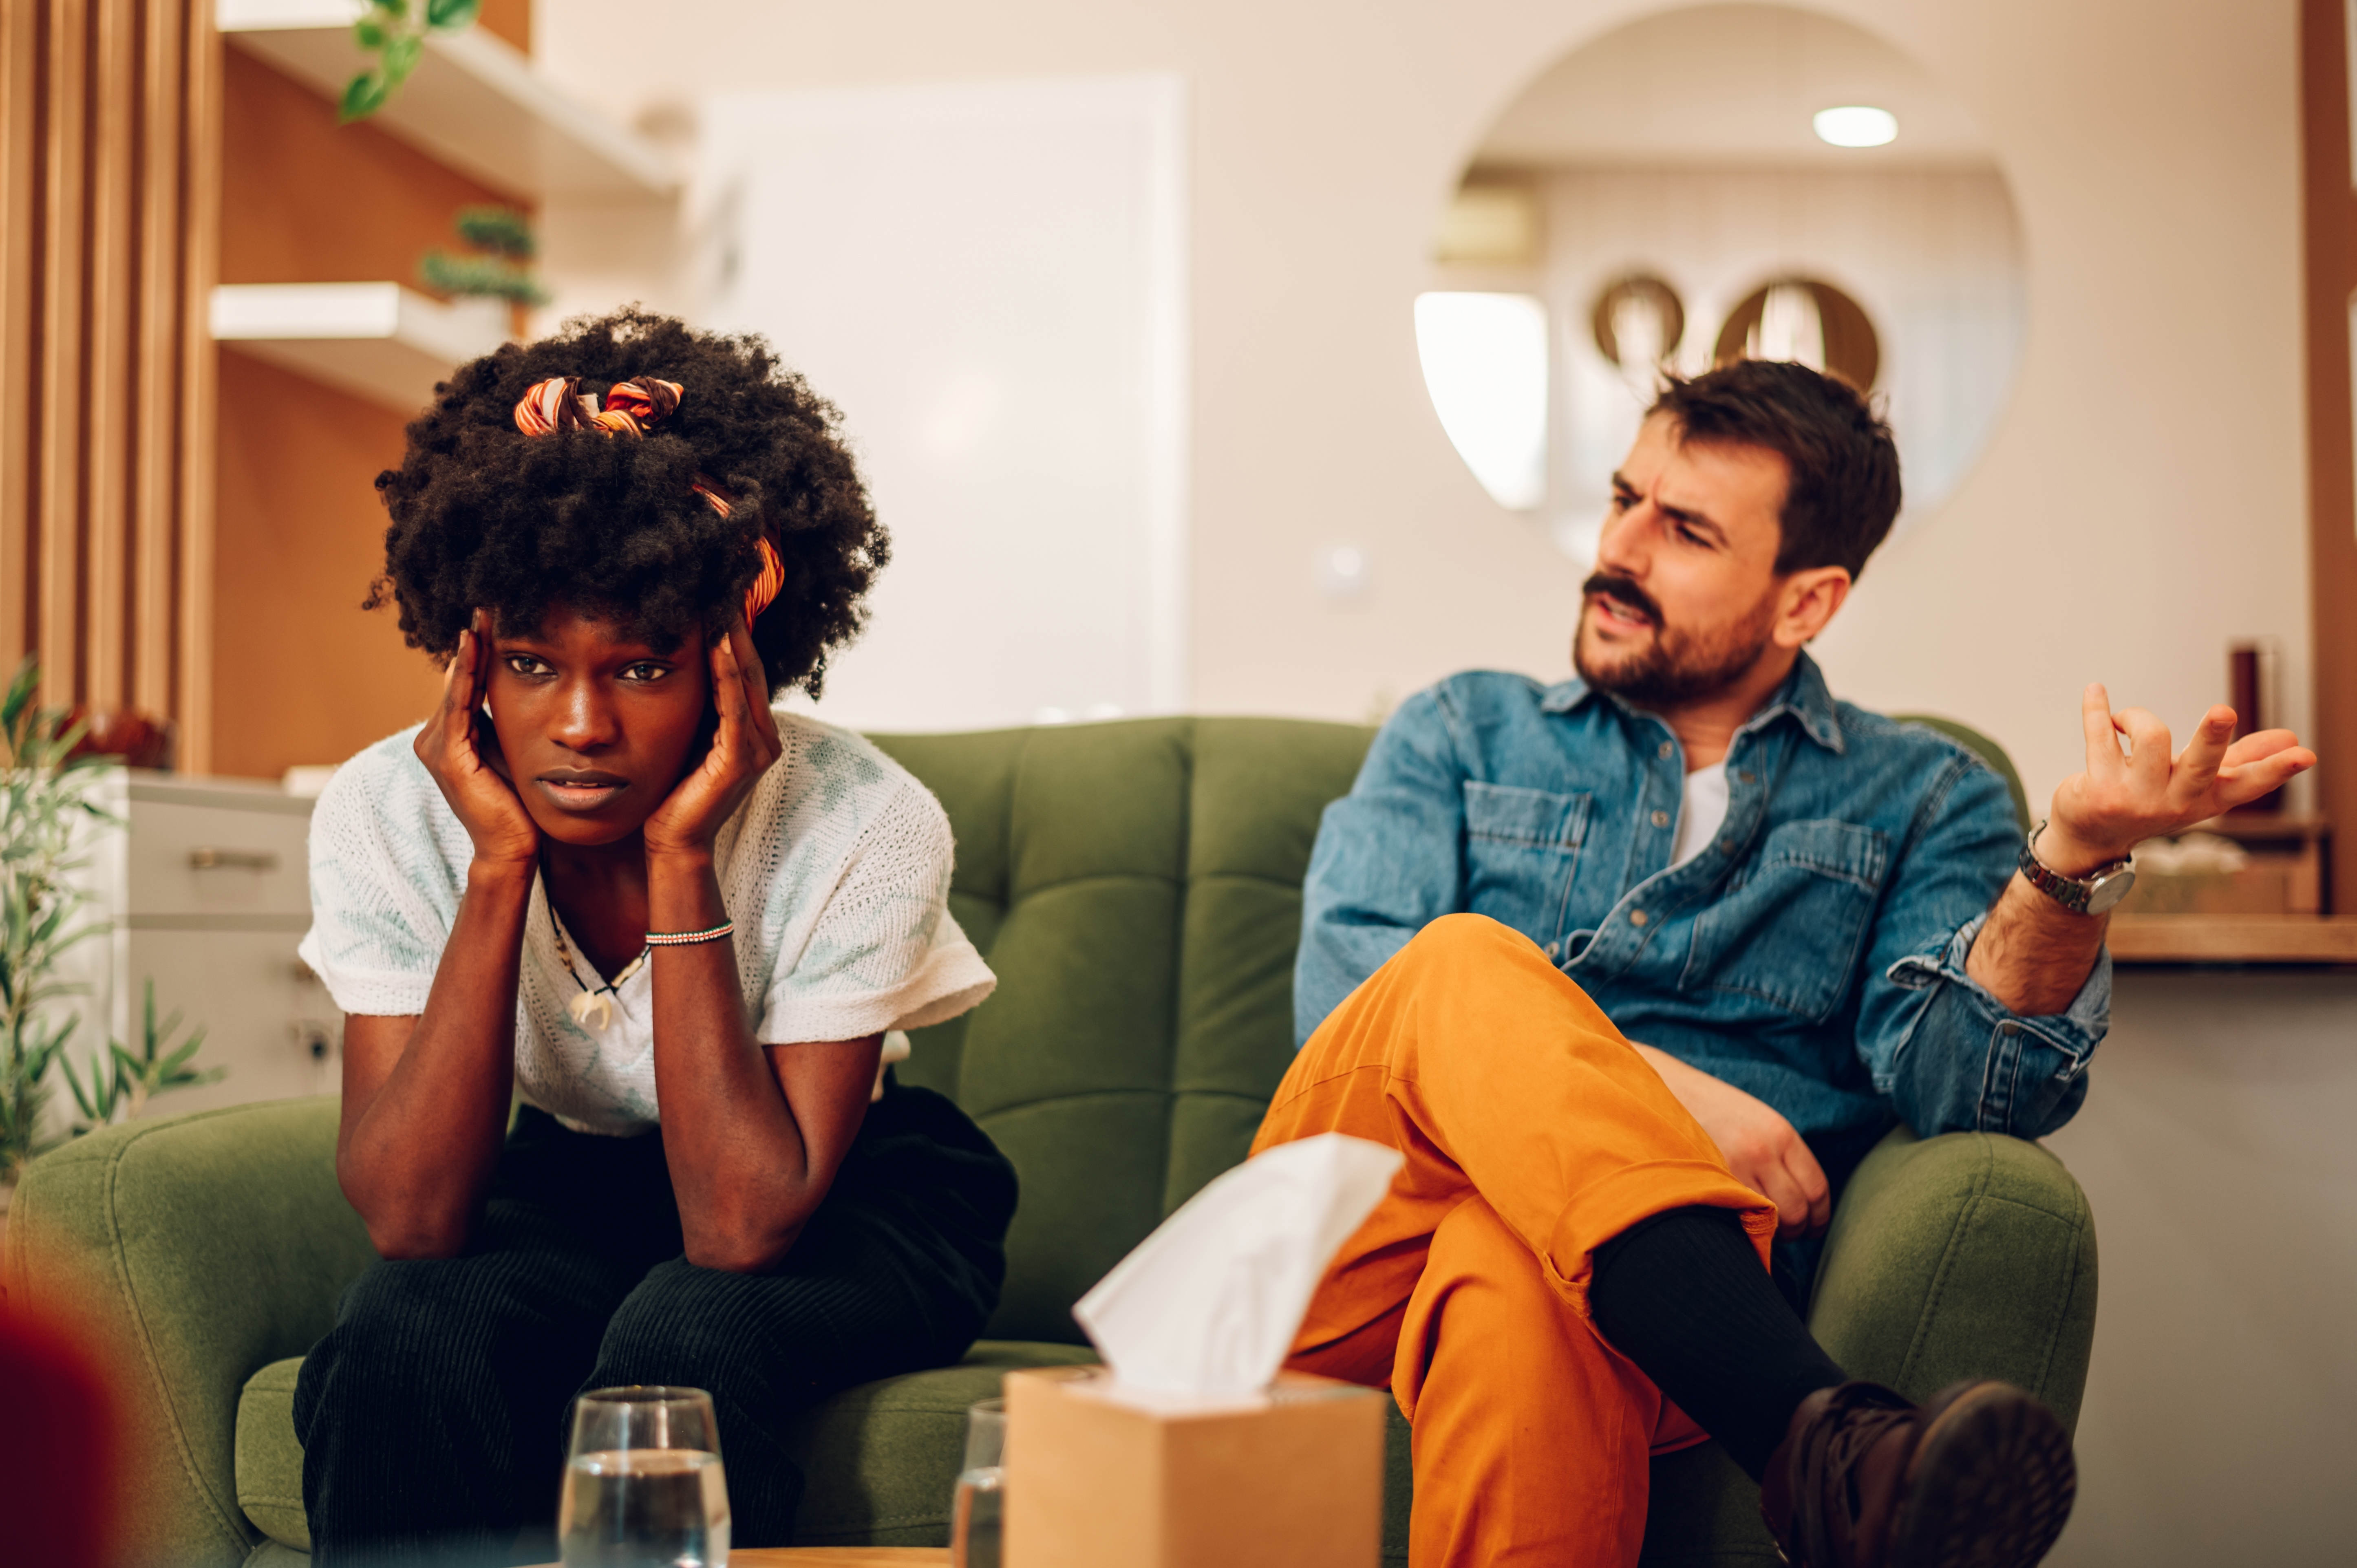 Ein weißer Mann und eine schwarze Frau haben eine Meinungsverschiedenheit, während sie auf einer Couch sitzen. | Quelle: Shutterstock